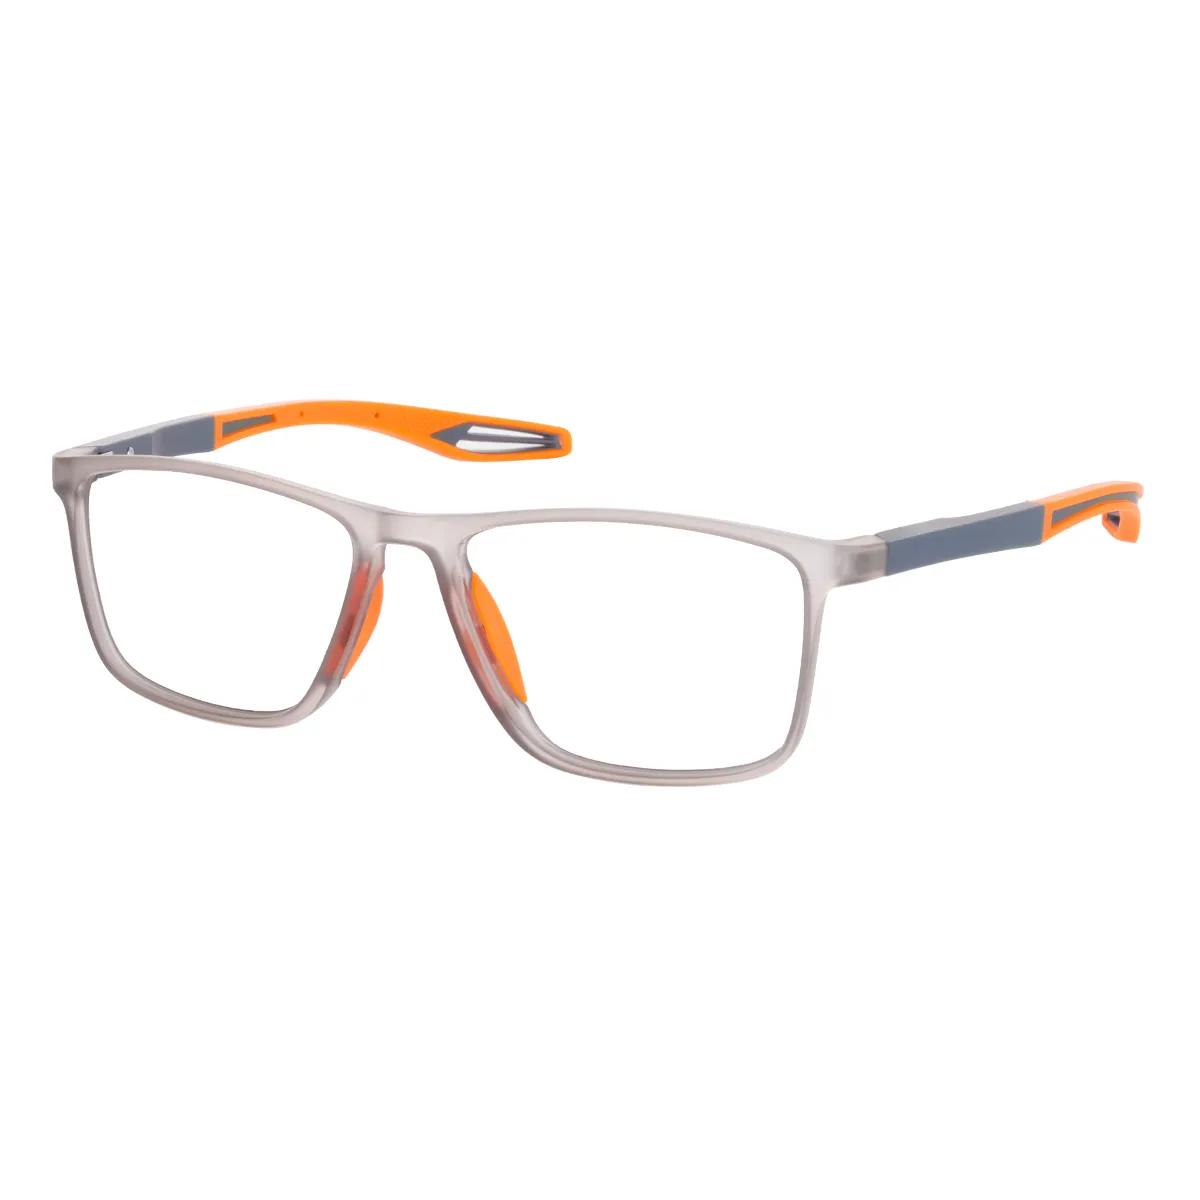 Nugent - Square Gray Glasses for Men & Women